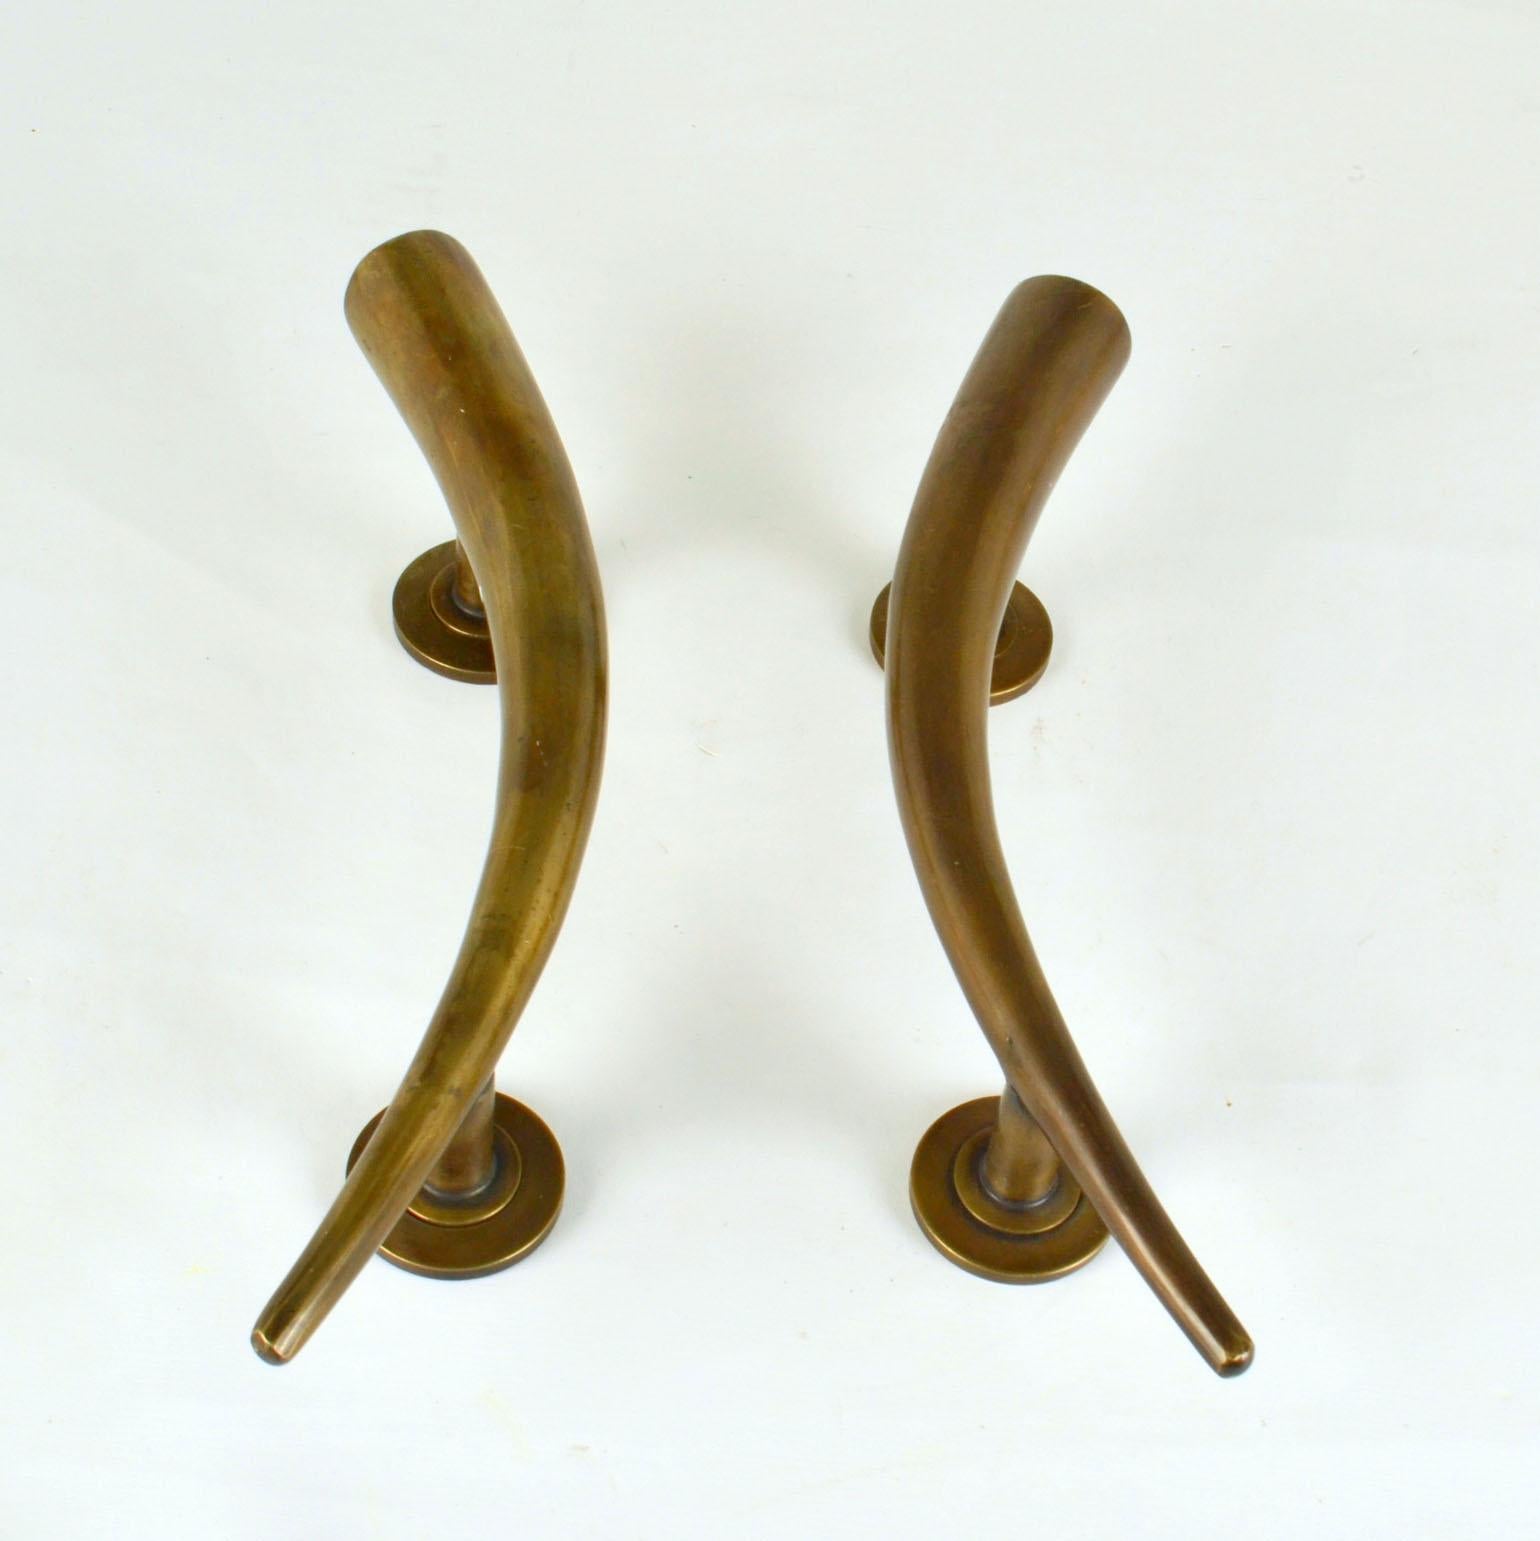 Paire de poignées de porte en bronze coulé Art Déco en forme de corne. La patine d'origine sur une surface lisse de ces poignées de porte sculpturales ajoute à son ancienneté.
Ils fonctionneront à l'intérieur ou à l'extérieur de n'importe quel